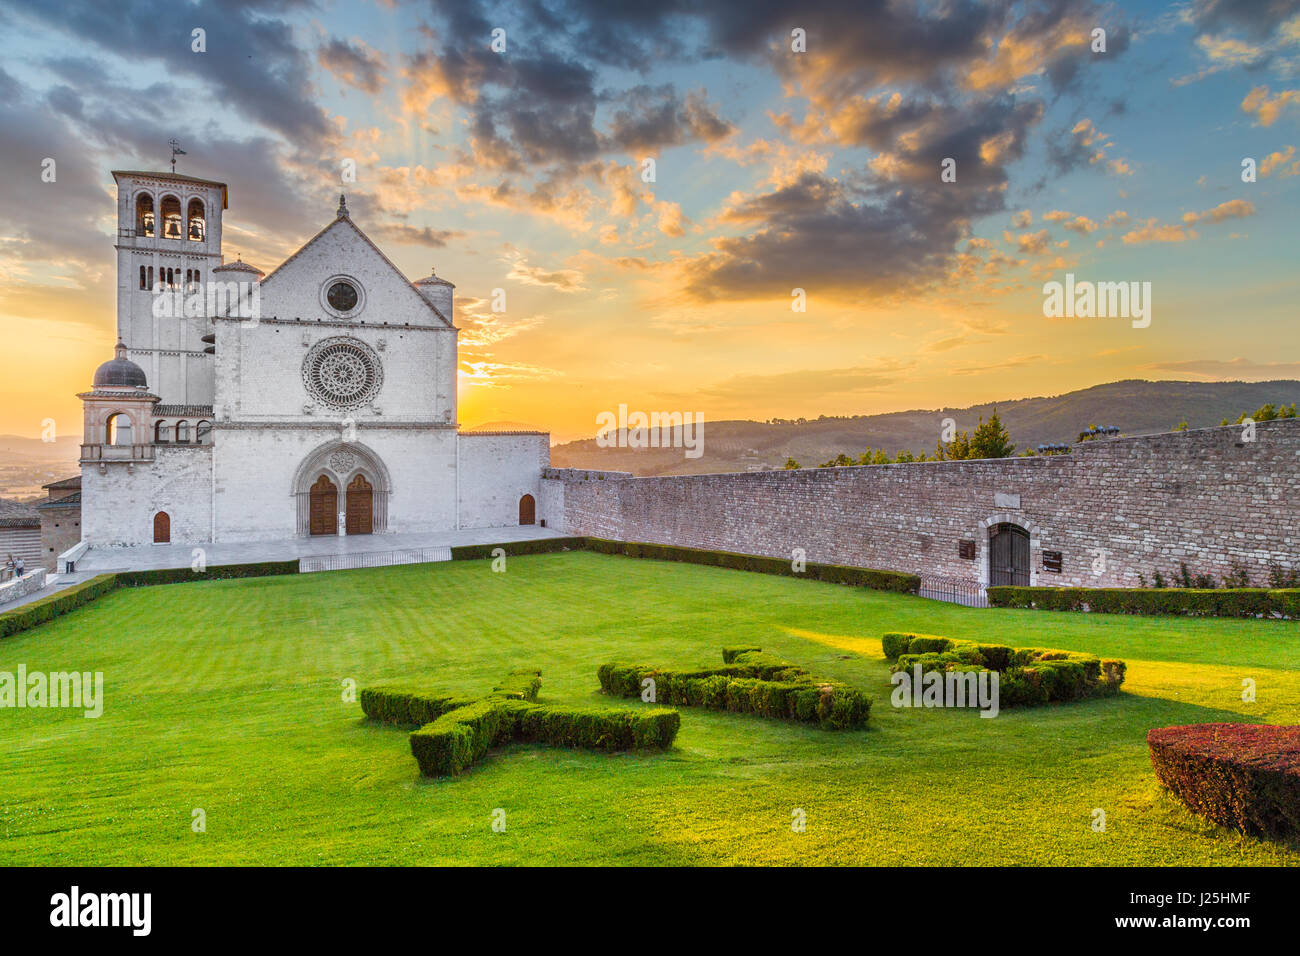 Berühmte Basilika des Heiligen Franziskus von Assisi (Basilica Papale di San Francesco) mit Pax melden Sie sich an schönen goldenen Abendlicht bei Sonnenuntergang, Umbrien, Italien Stockfoto